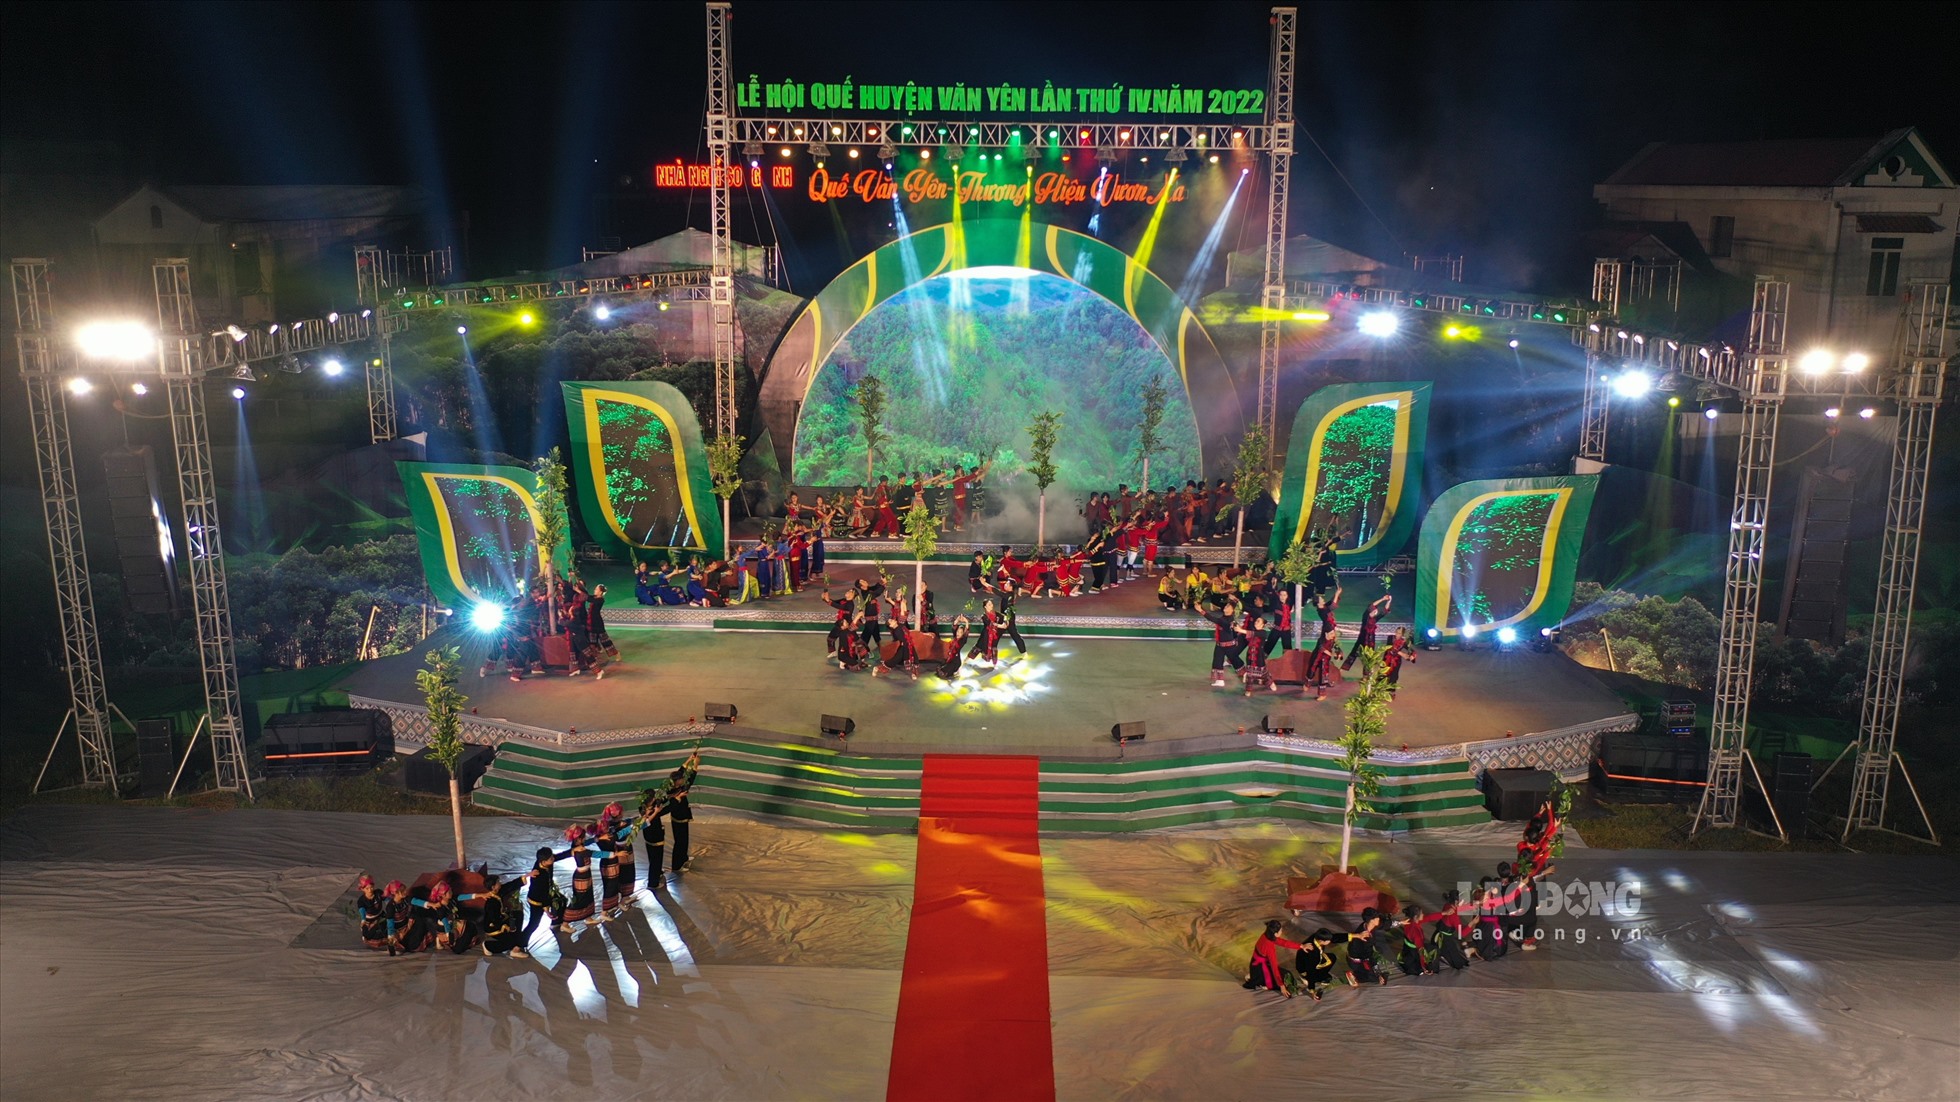 Tối 14.10, huyện Văn Yên đã tưng bừng tổ chức Lễ hội Quế Văn Yên lần thứ IV năm 2022 với sự tham gia của hàng ngàn người từ khắp trên địa bàn cùng du khách gần xa.